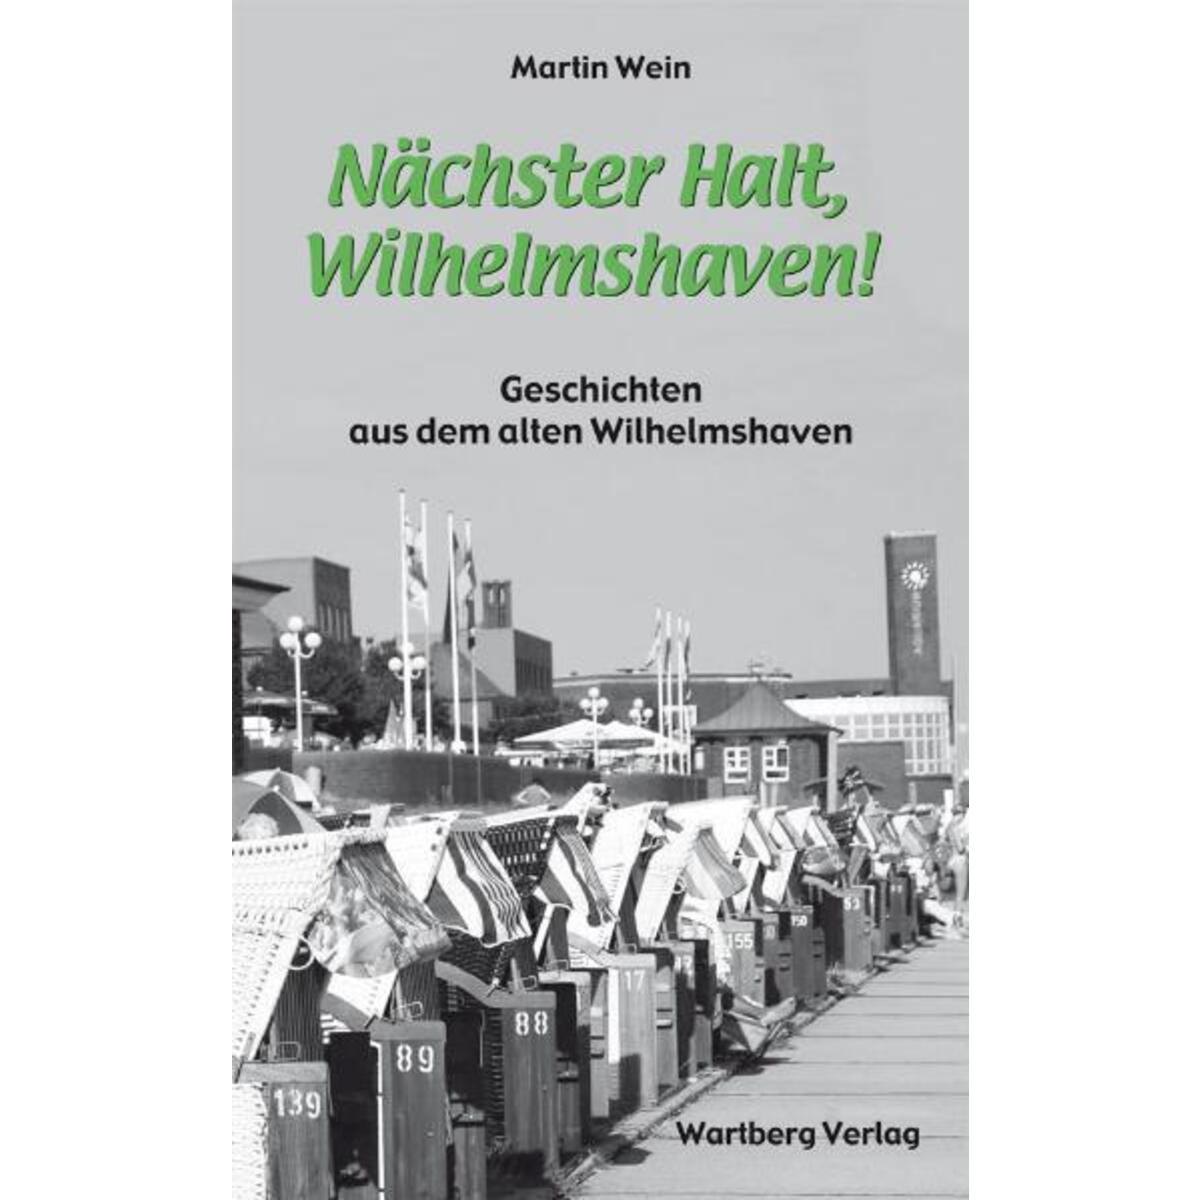 Nächster Halt, Wilhelmshaven! von Wartberg Verlag